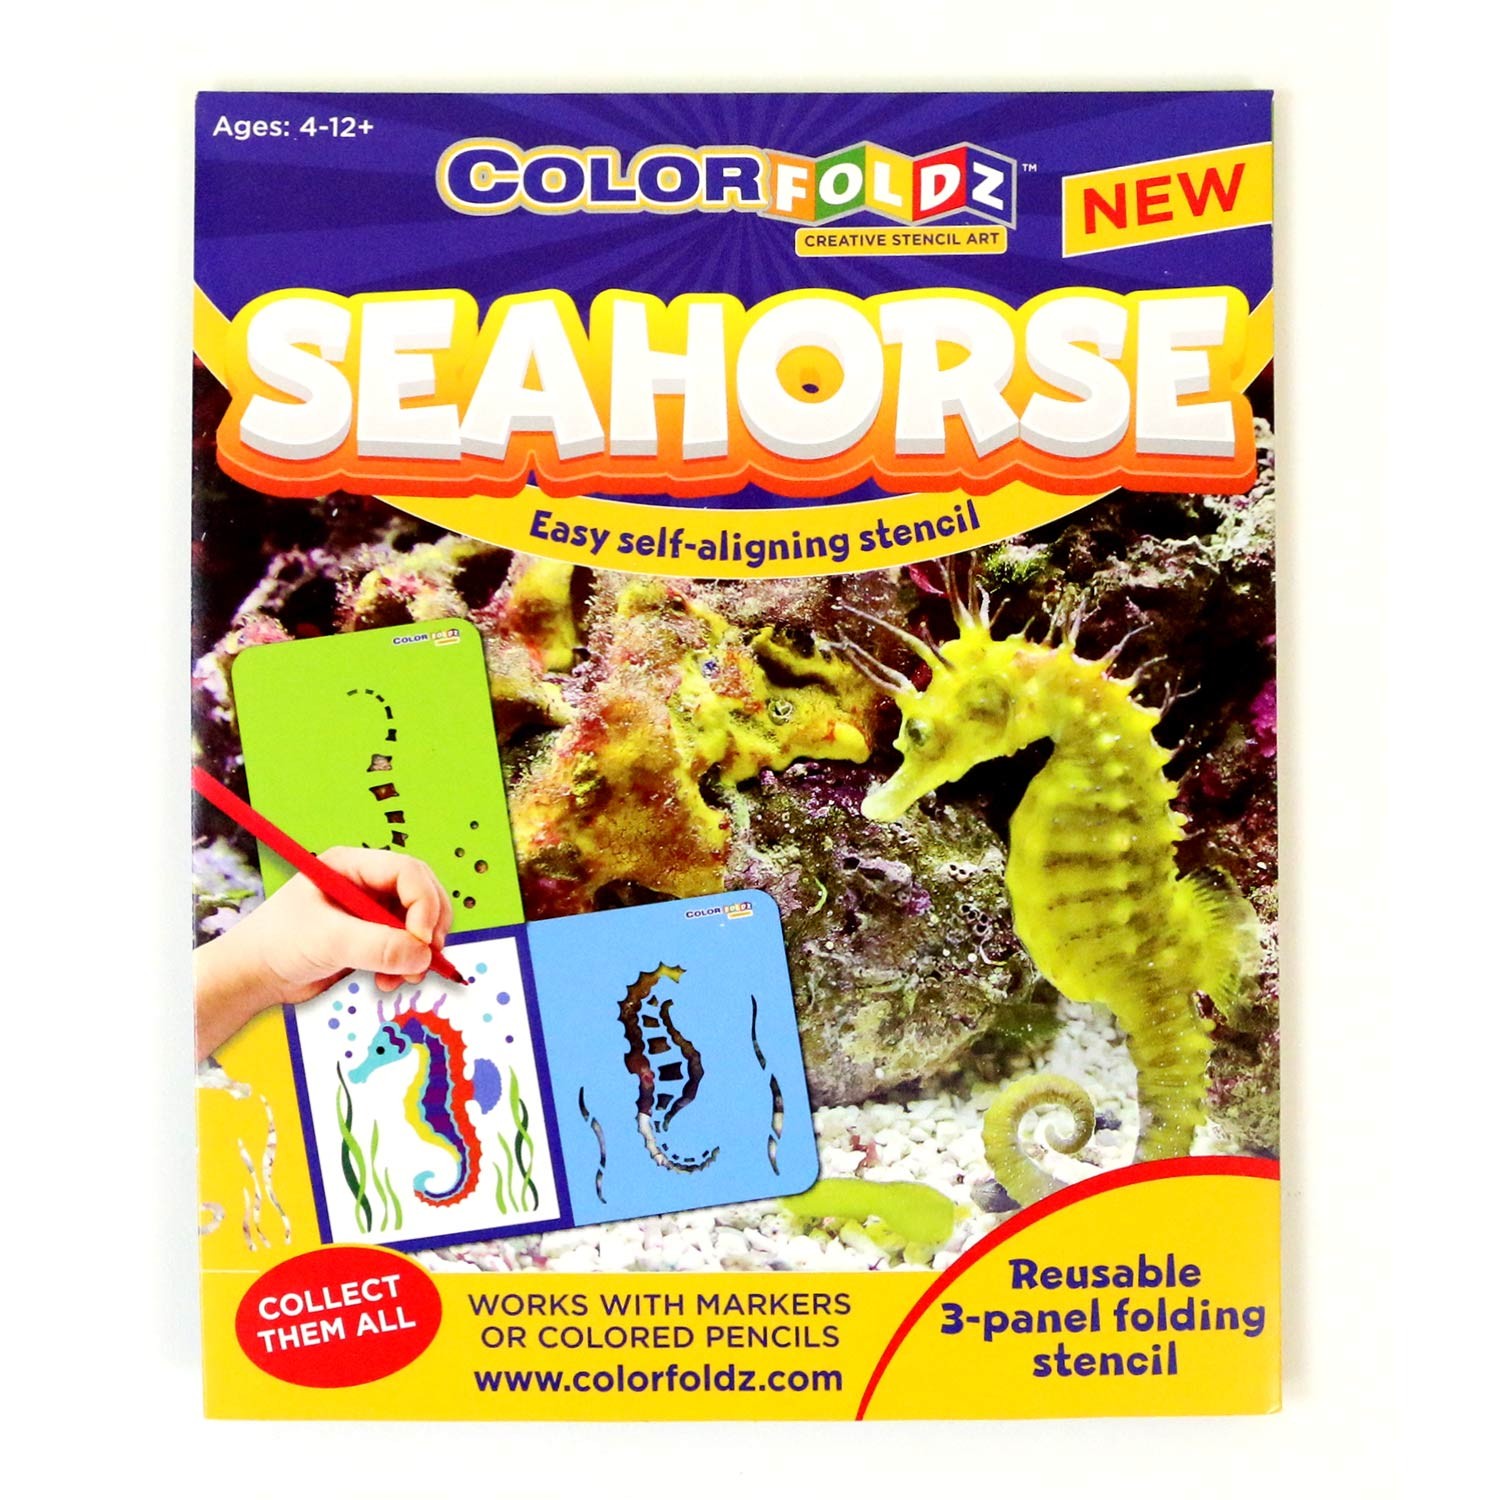 Seahorse ColorFoldz Self-Aligning Stencil